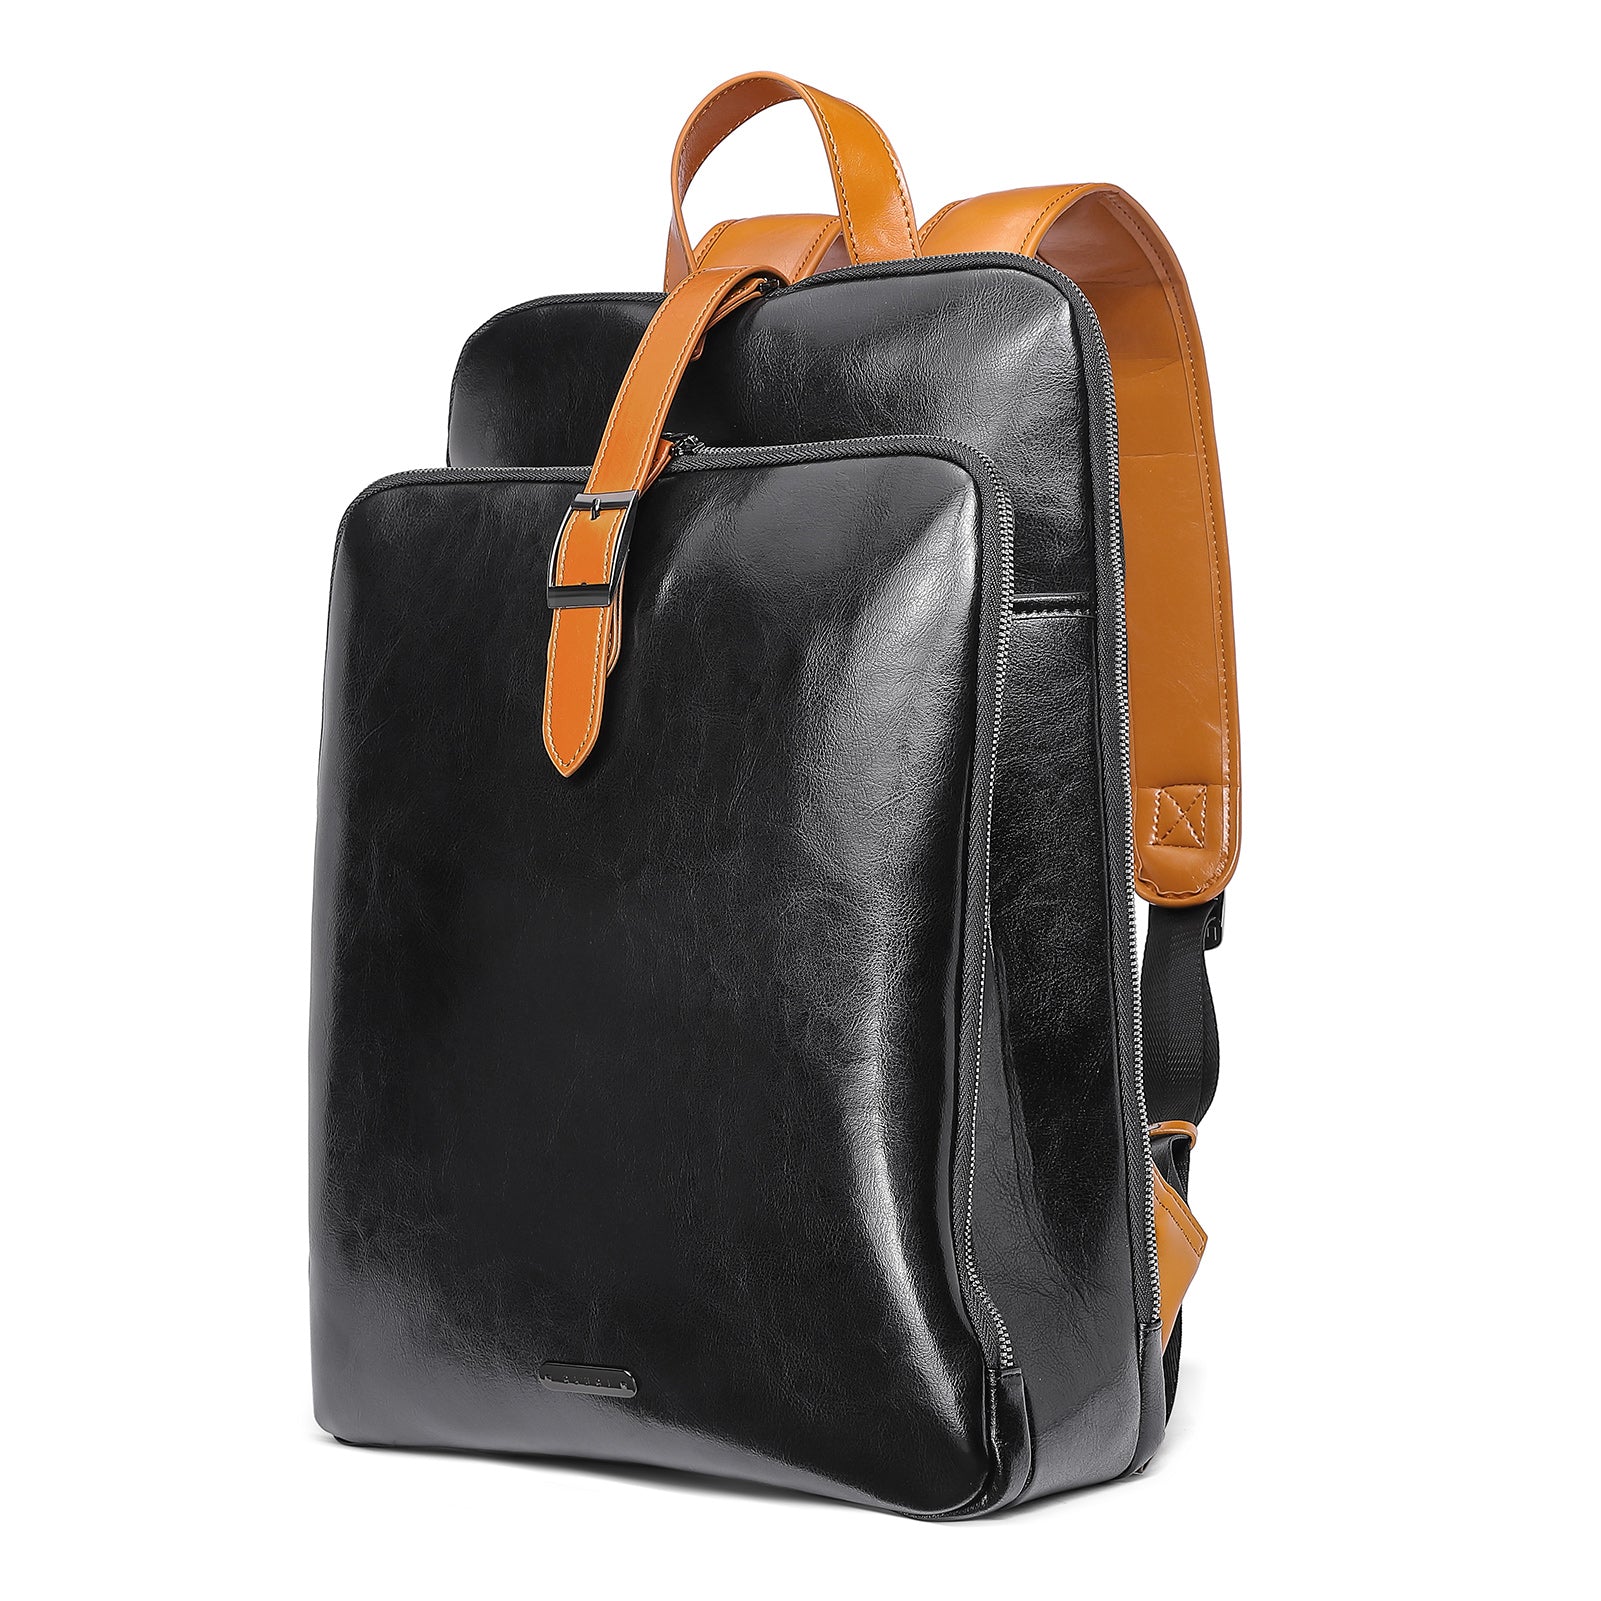 livy shoulder bag + clutch - final sale – modern+chic